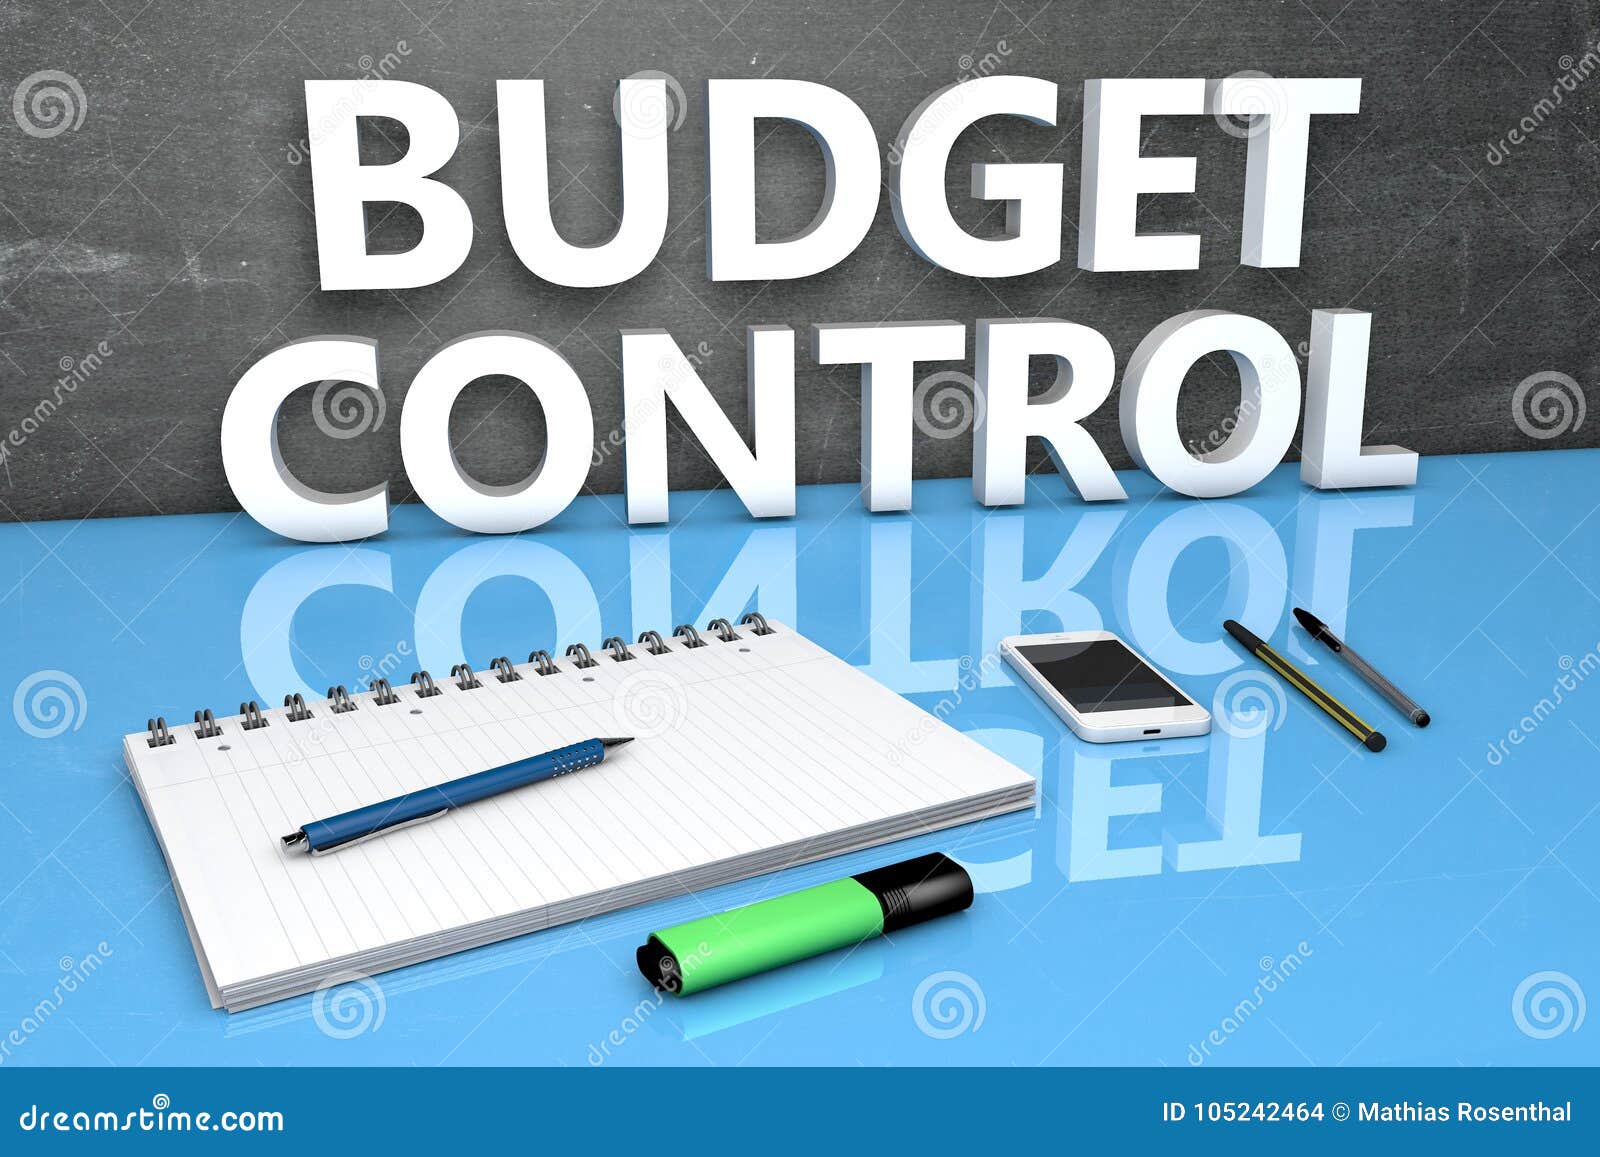 Мой бюджет контроль денег. Бюджетный контроль картинки для презентации. Контроль бюджета. Budget Control. Бюджетный контроль фото.